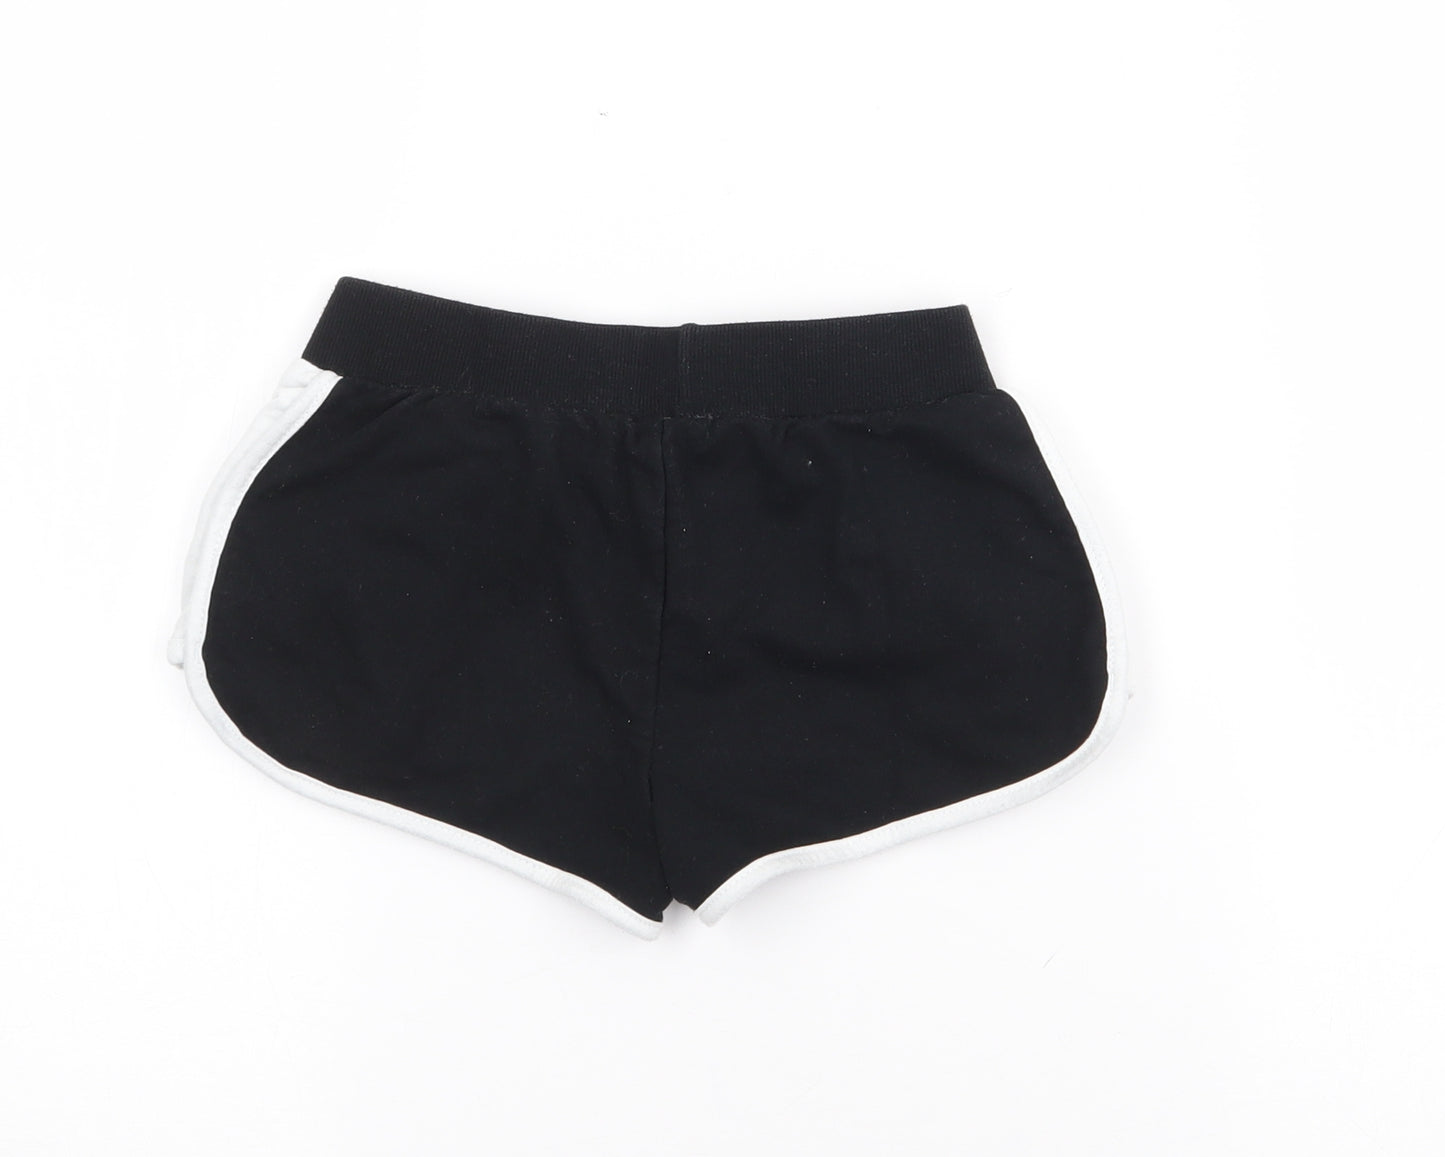 Primark Girls Black  Cotton Sweat Shorts Size 8-9 Years  Regular